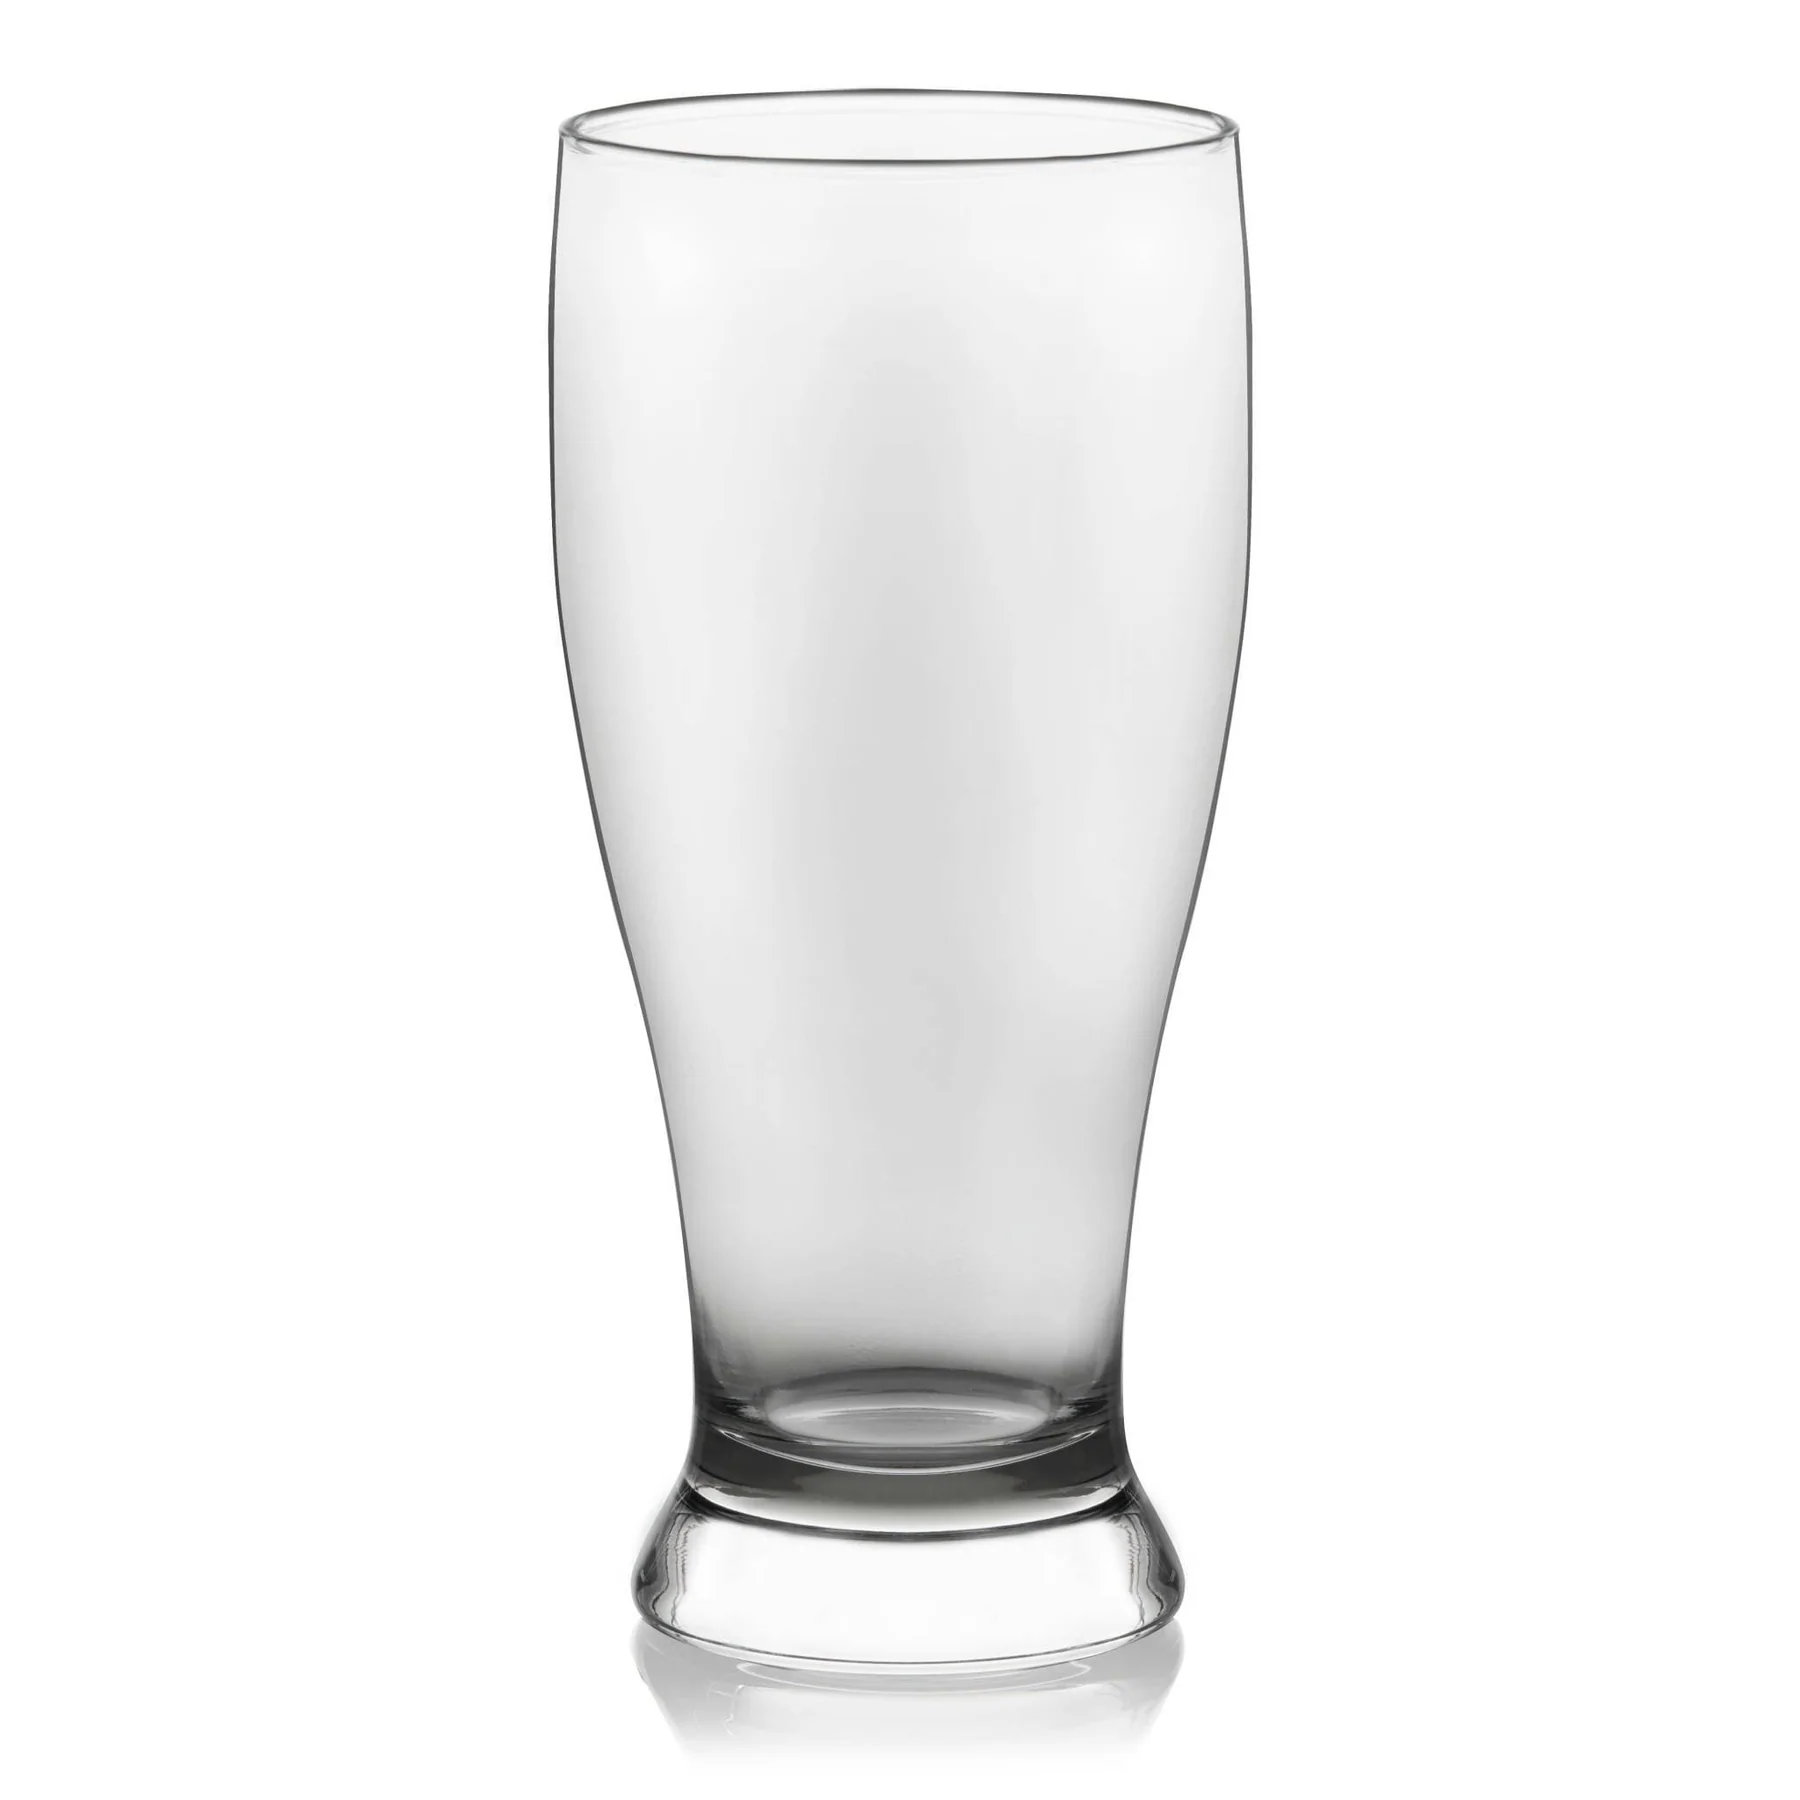 https://assets.wfcdn.com/im/99113914/compr-r85/2198/219841434/libbey-pub-beer-glasses-set-of-12.jpg